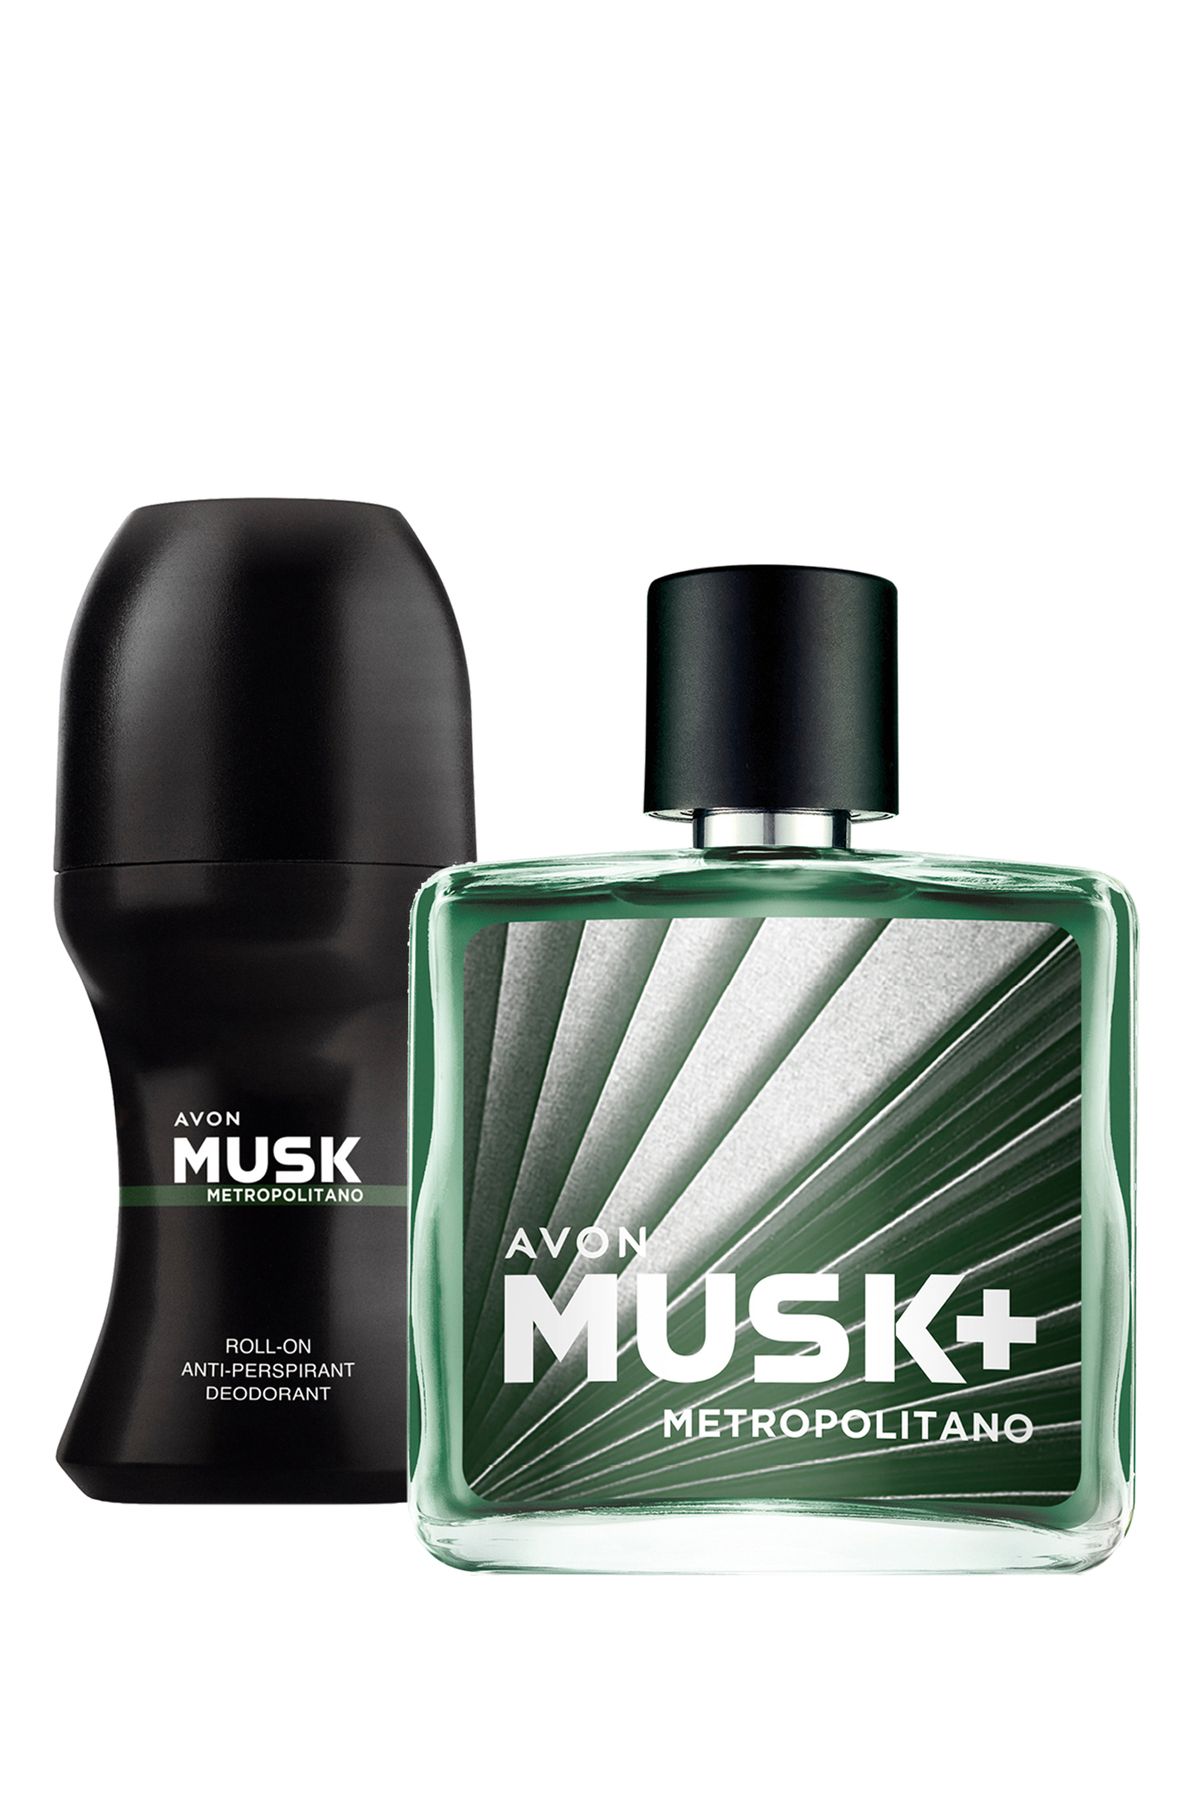 Avon Musk Metropolitano Erkek Parfüm ve Rollon Paketi